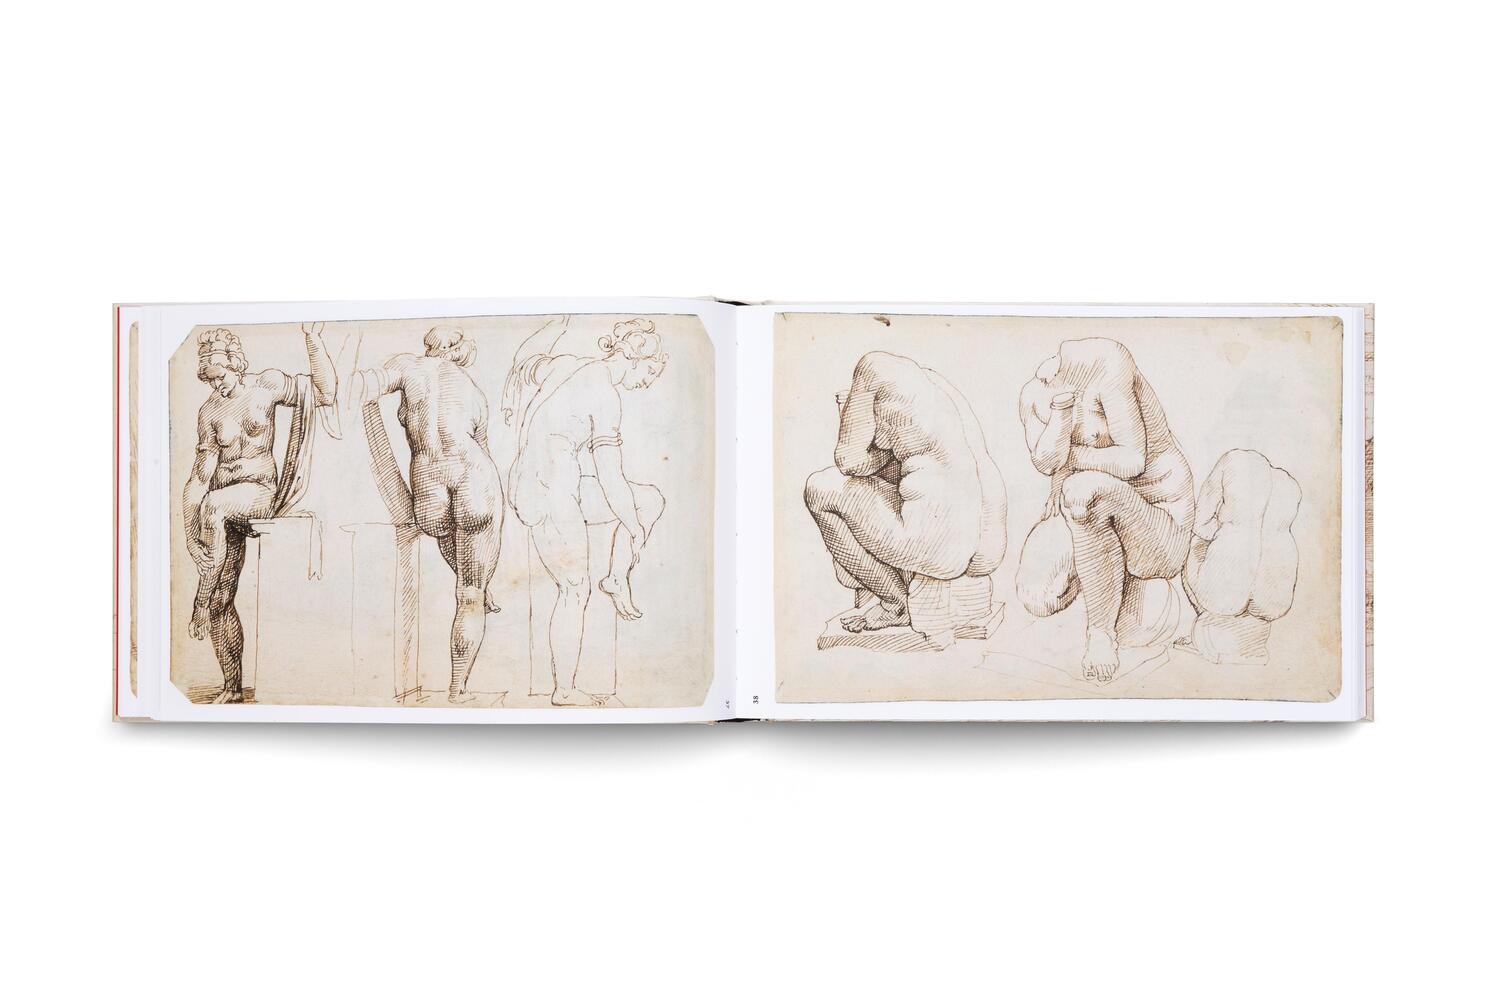 Bild: 9783775757881 | Maarten van Heemskerck | Das Römische Zeichnungsbuch | Bartsch (u. a.)